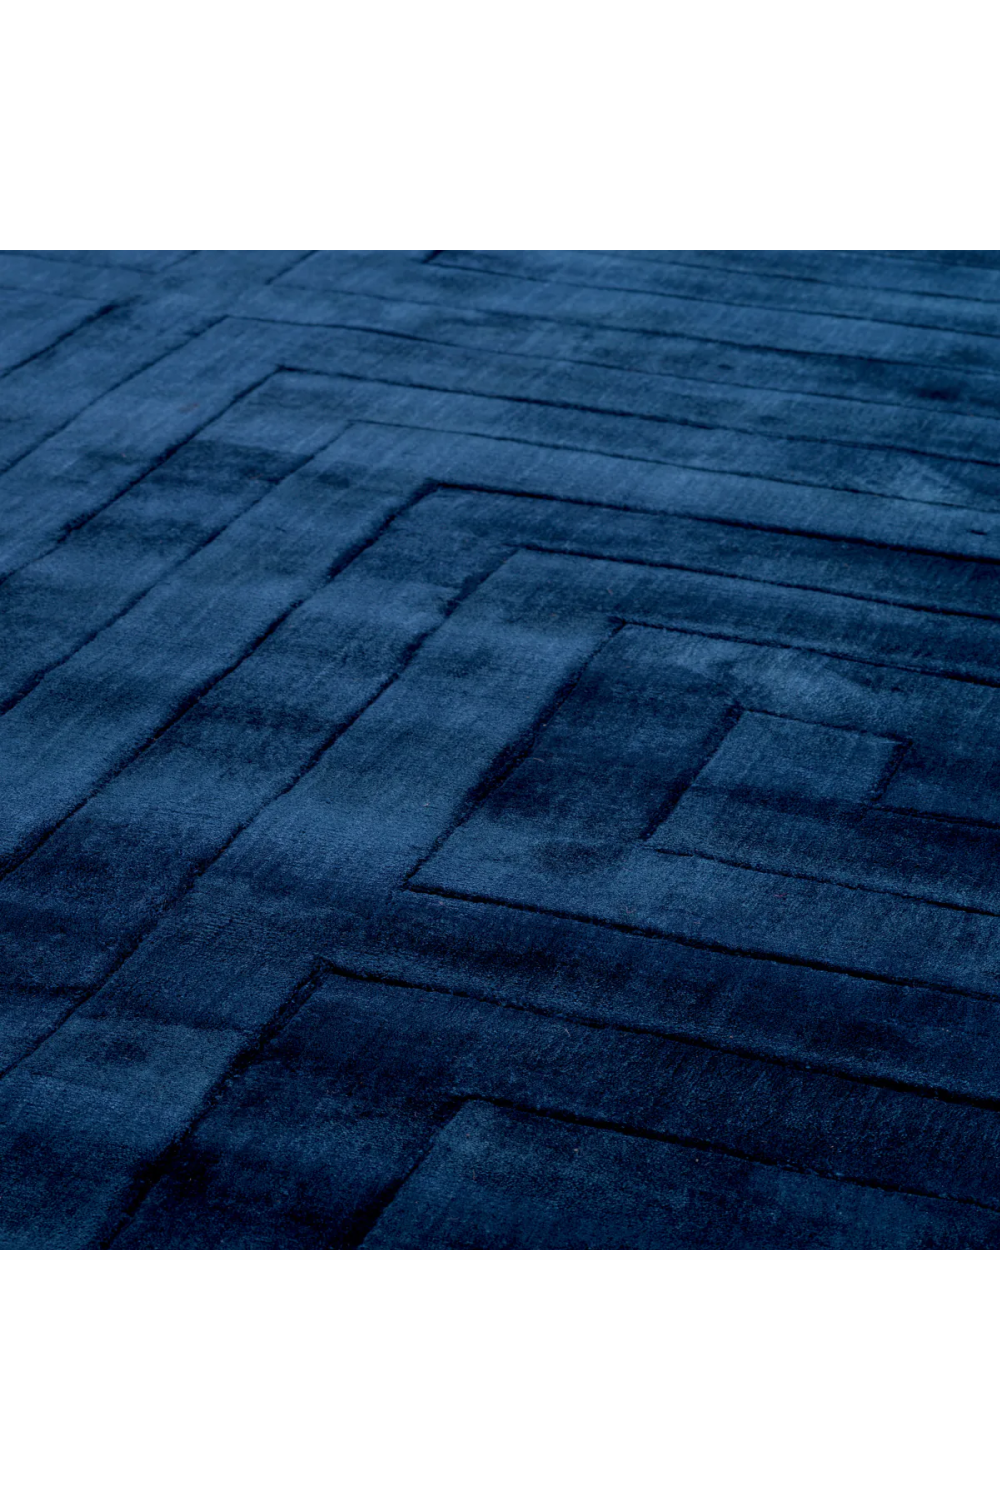 Sapphire Blue Rug 7' x 10' | Eichholtz Baldwin | Oroa.com